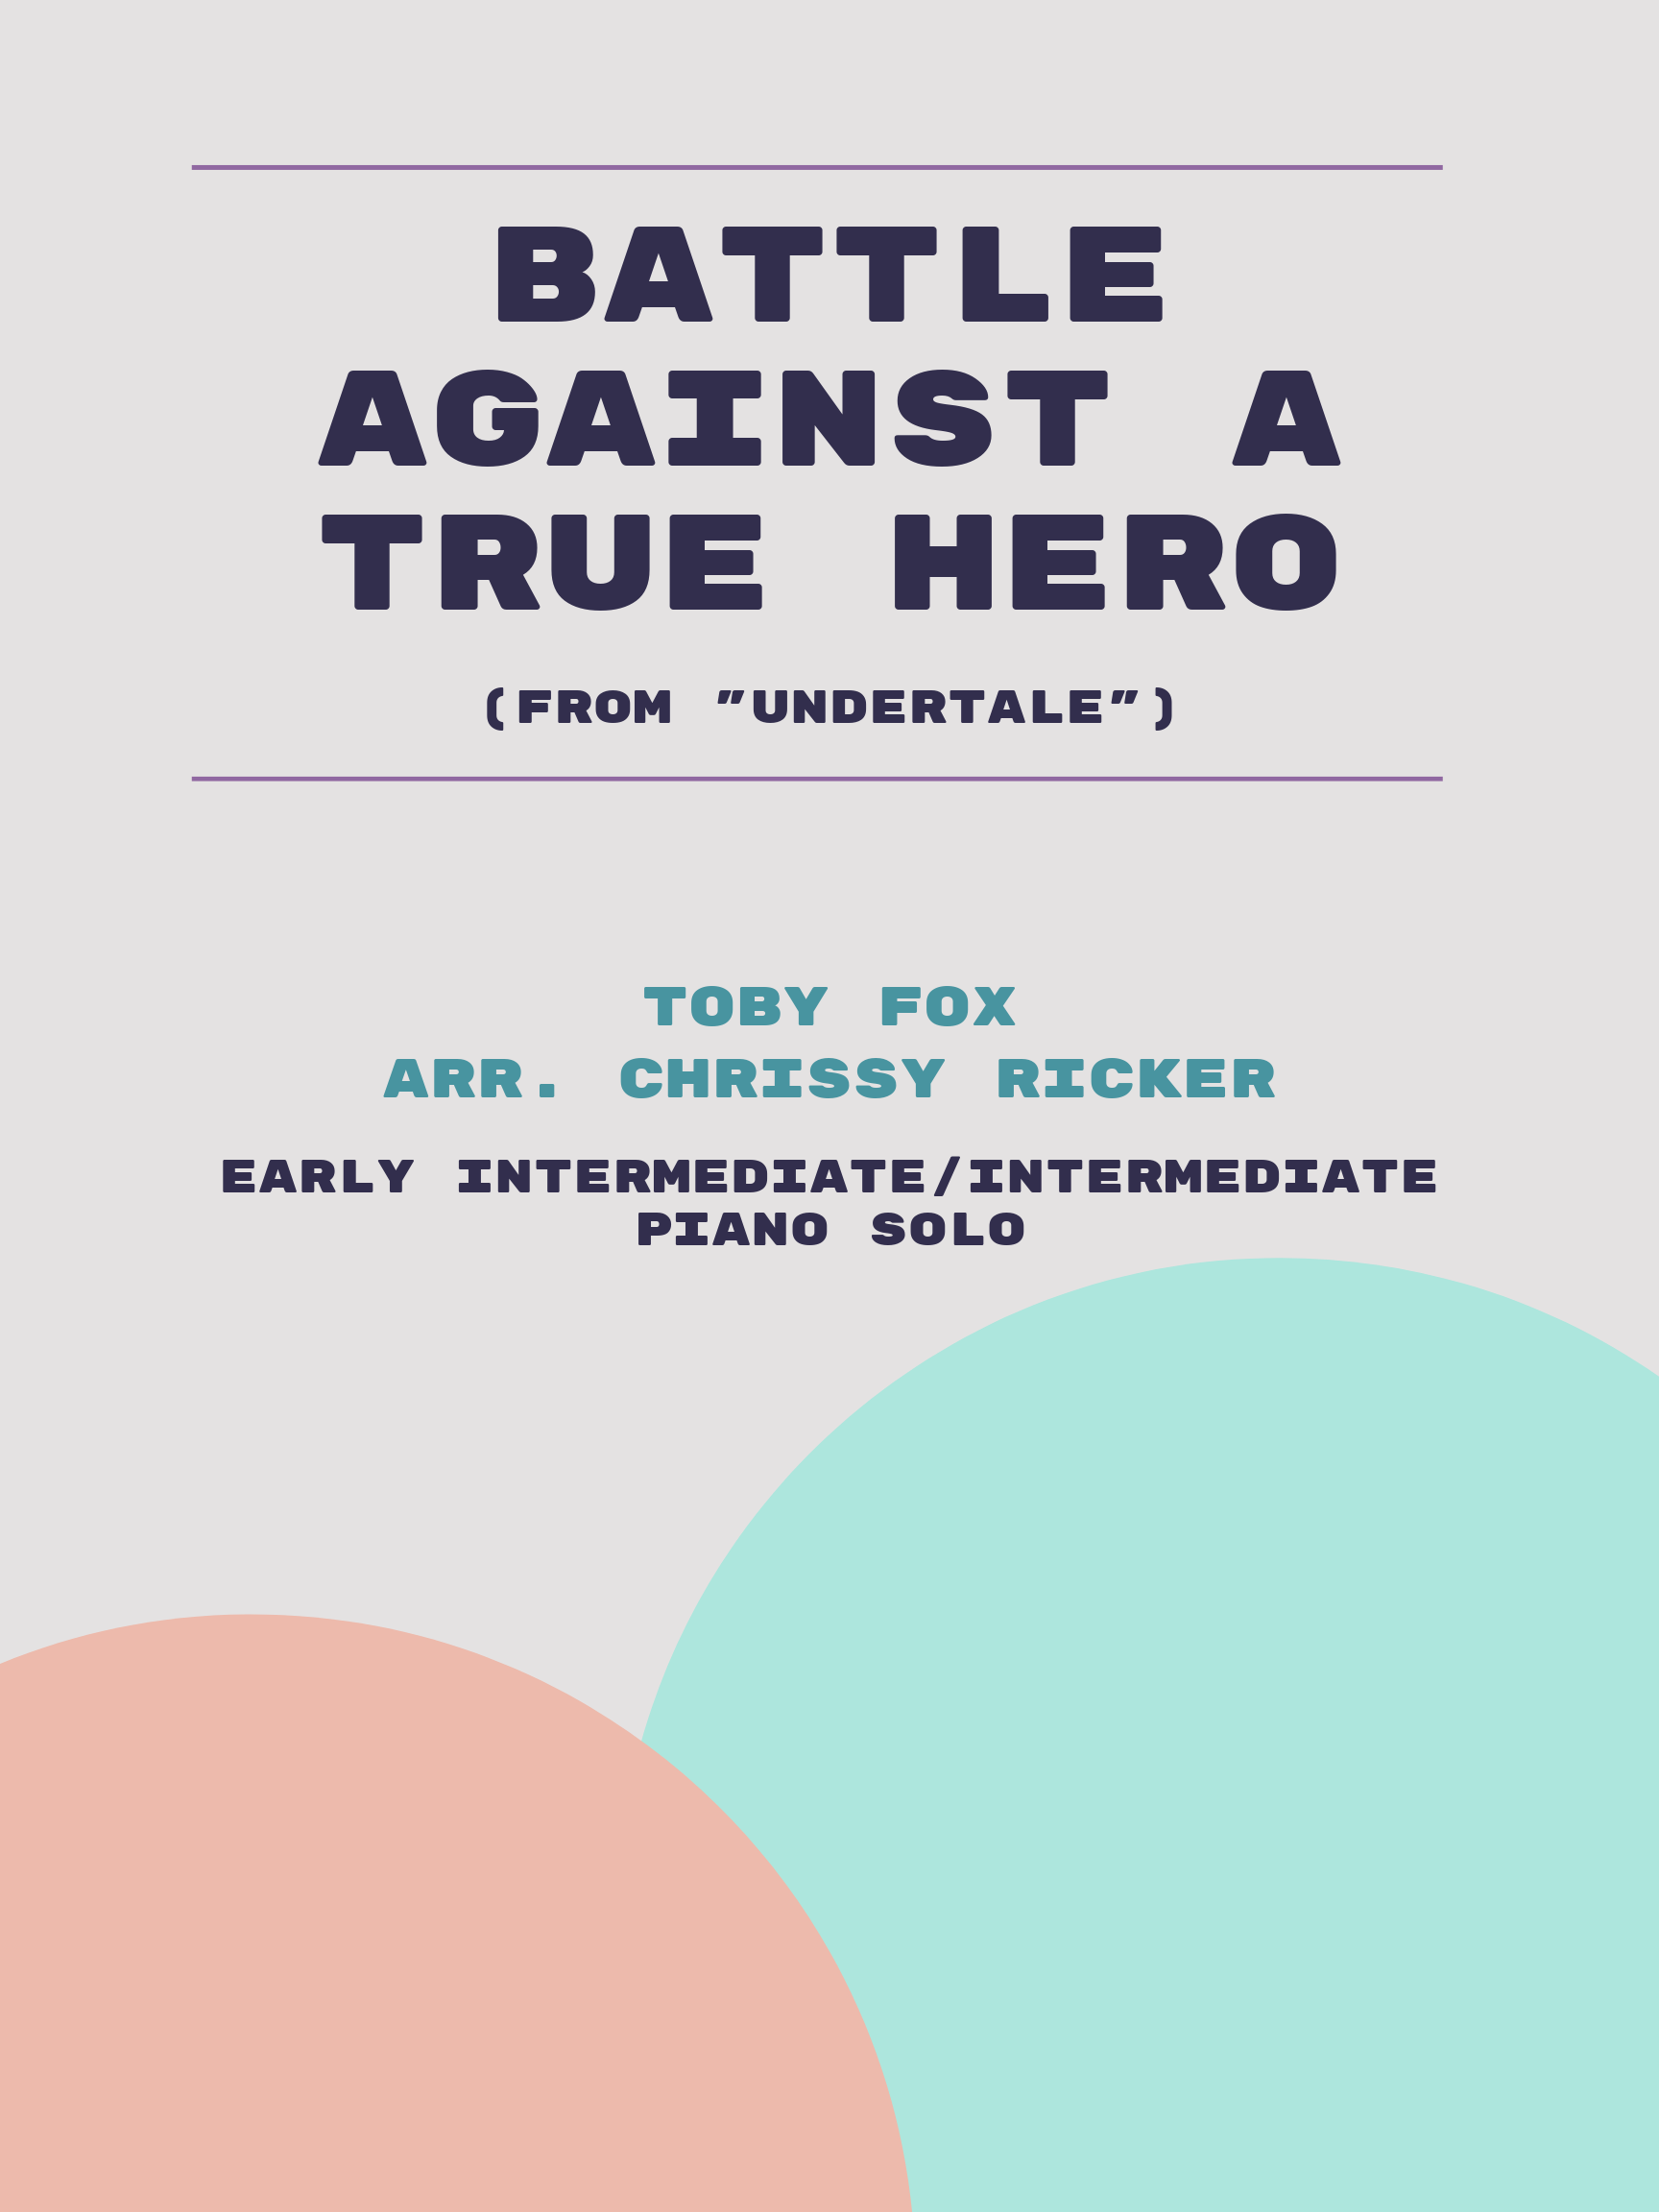 Battle Against a True Hero by Toby Fox